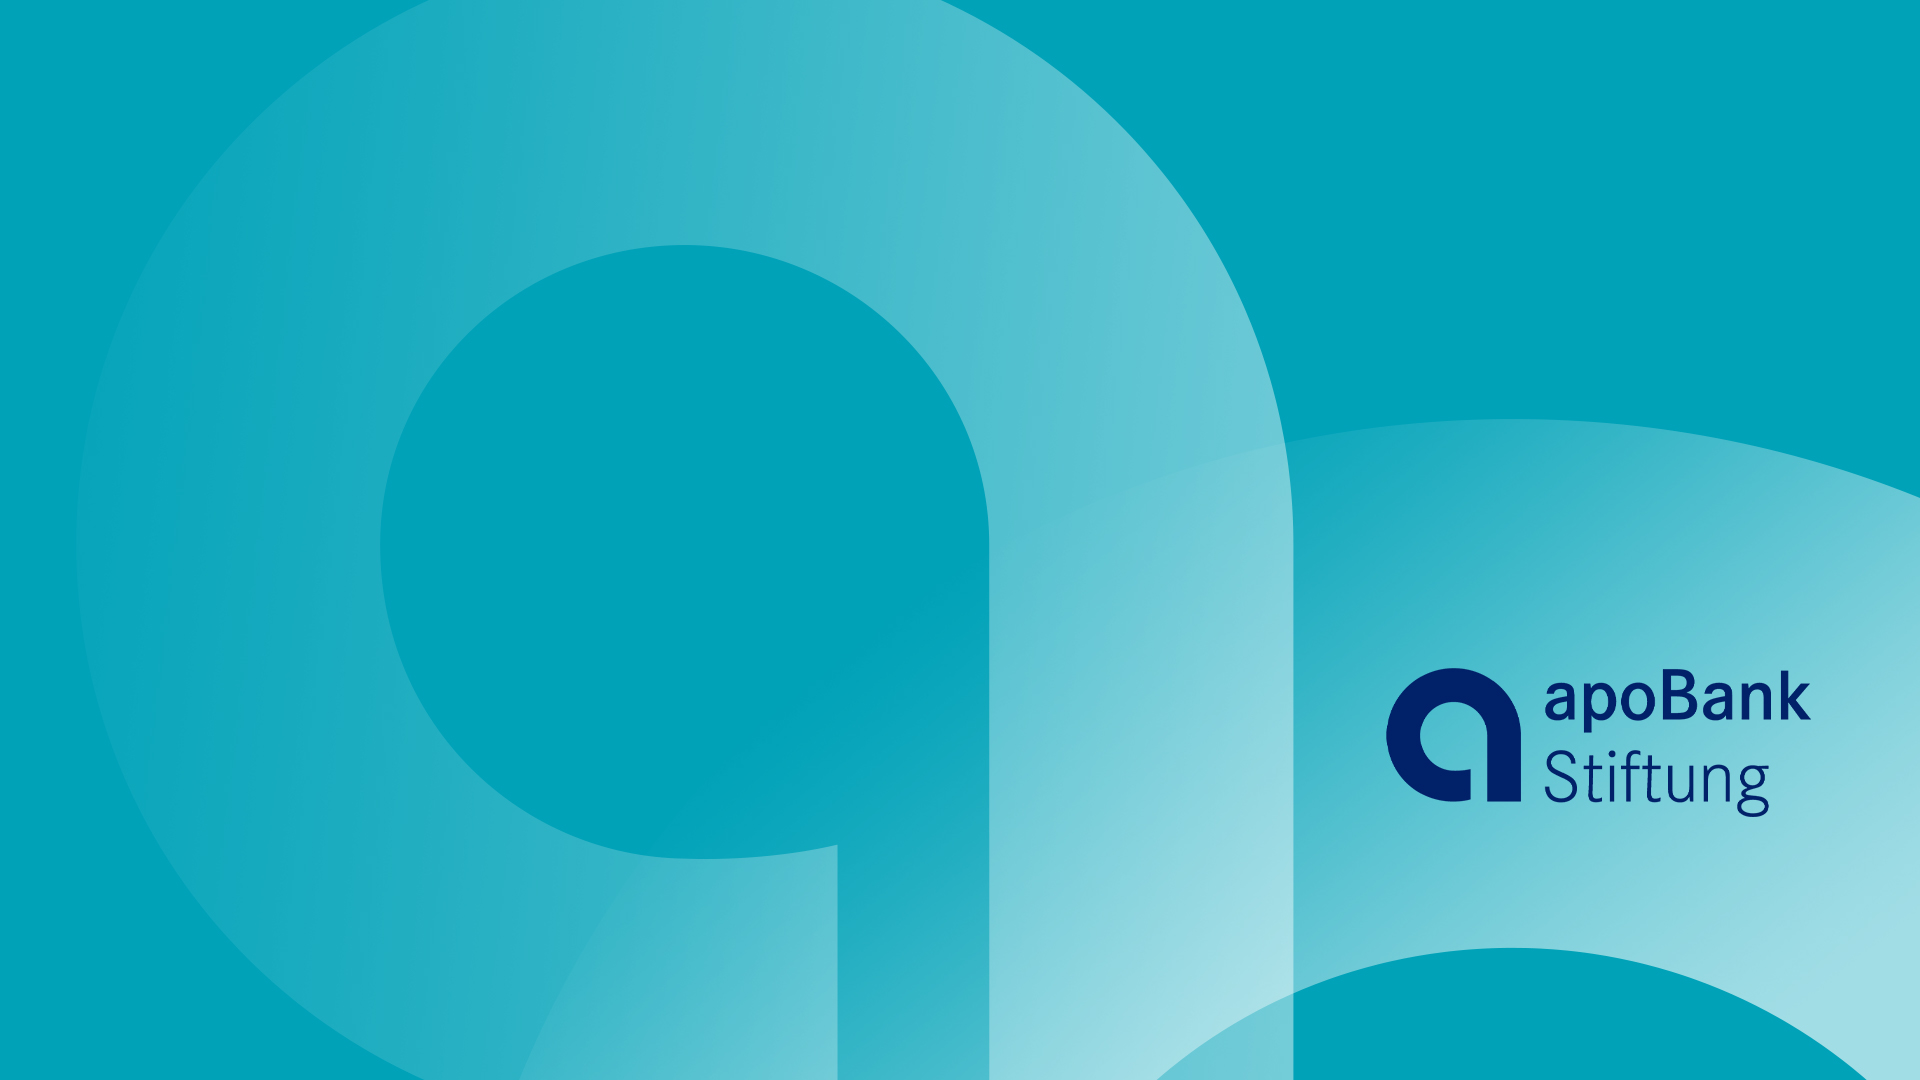 apobank-stiftung logo